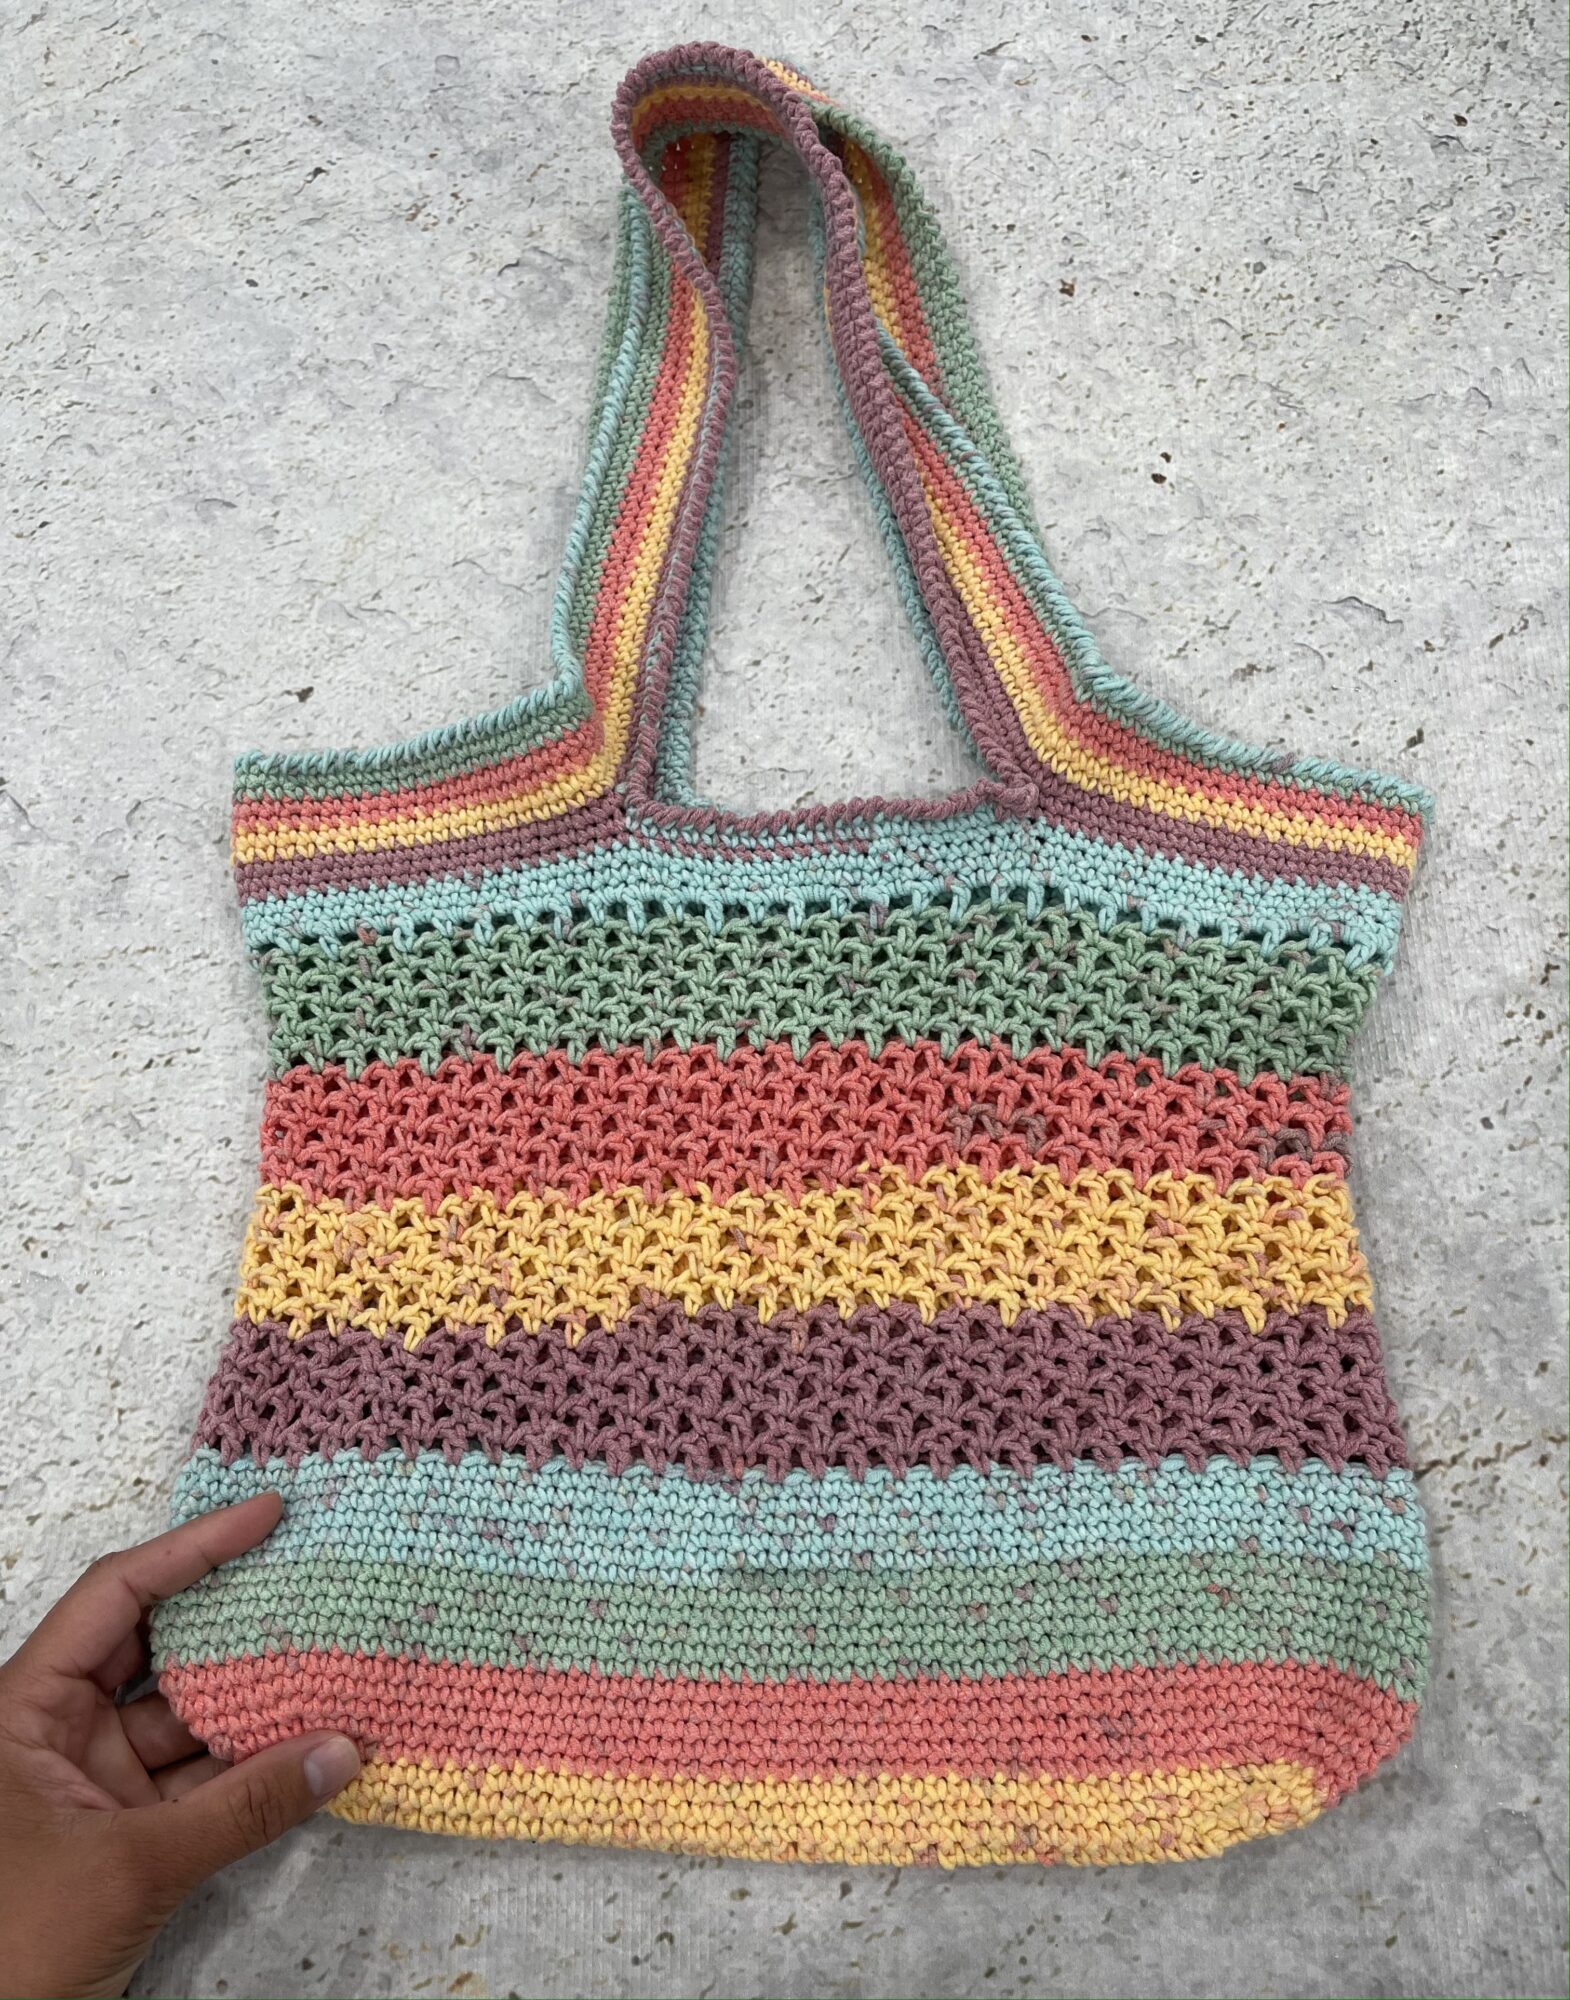 Easy Market Tote Crochet Kit or Knitting Kit - Crochet / Bonfire